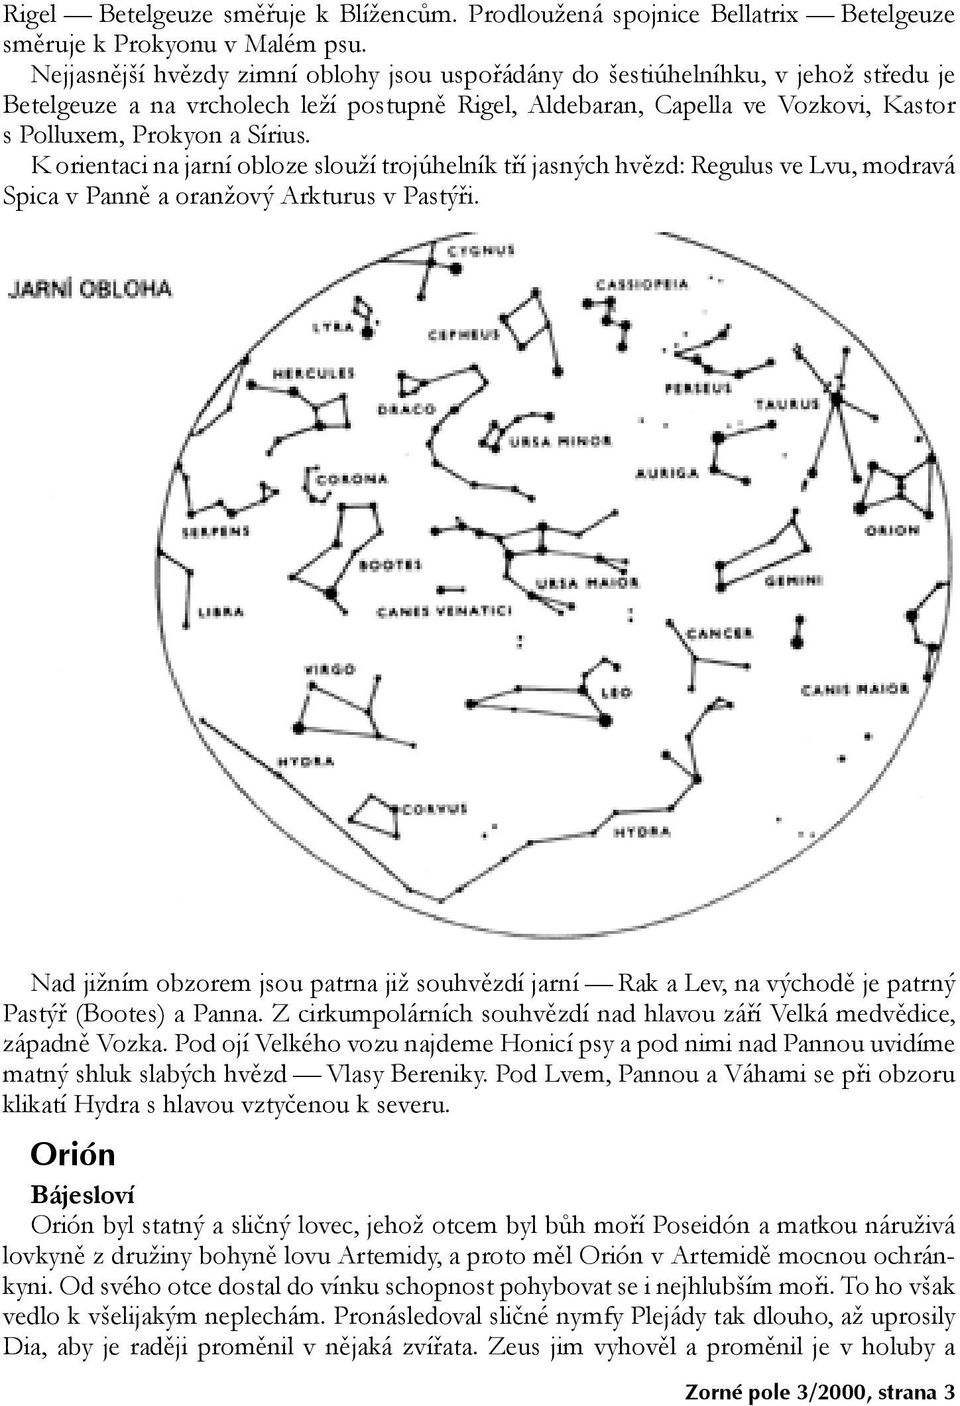 K orientaci na jarní obloze slouží trojúhelník tří jasných hvězd: Regulus ve Lvu, modravá Spica v Panně a oranžový Arkturus v Pastýři.